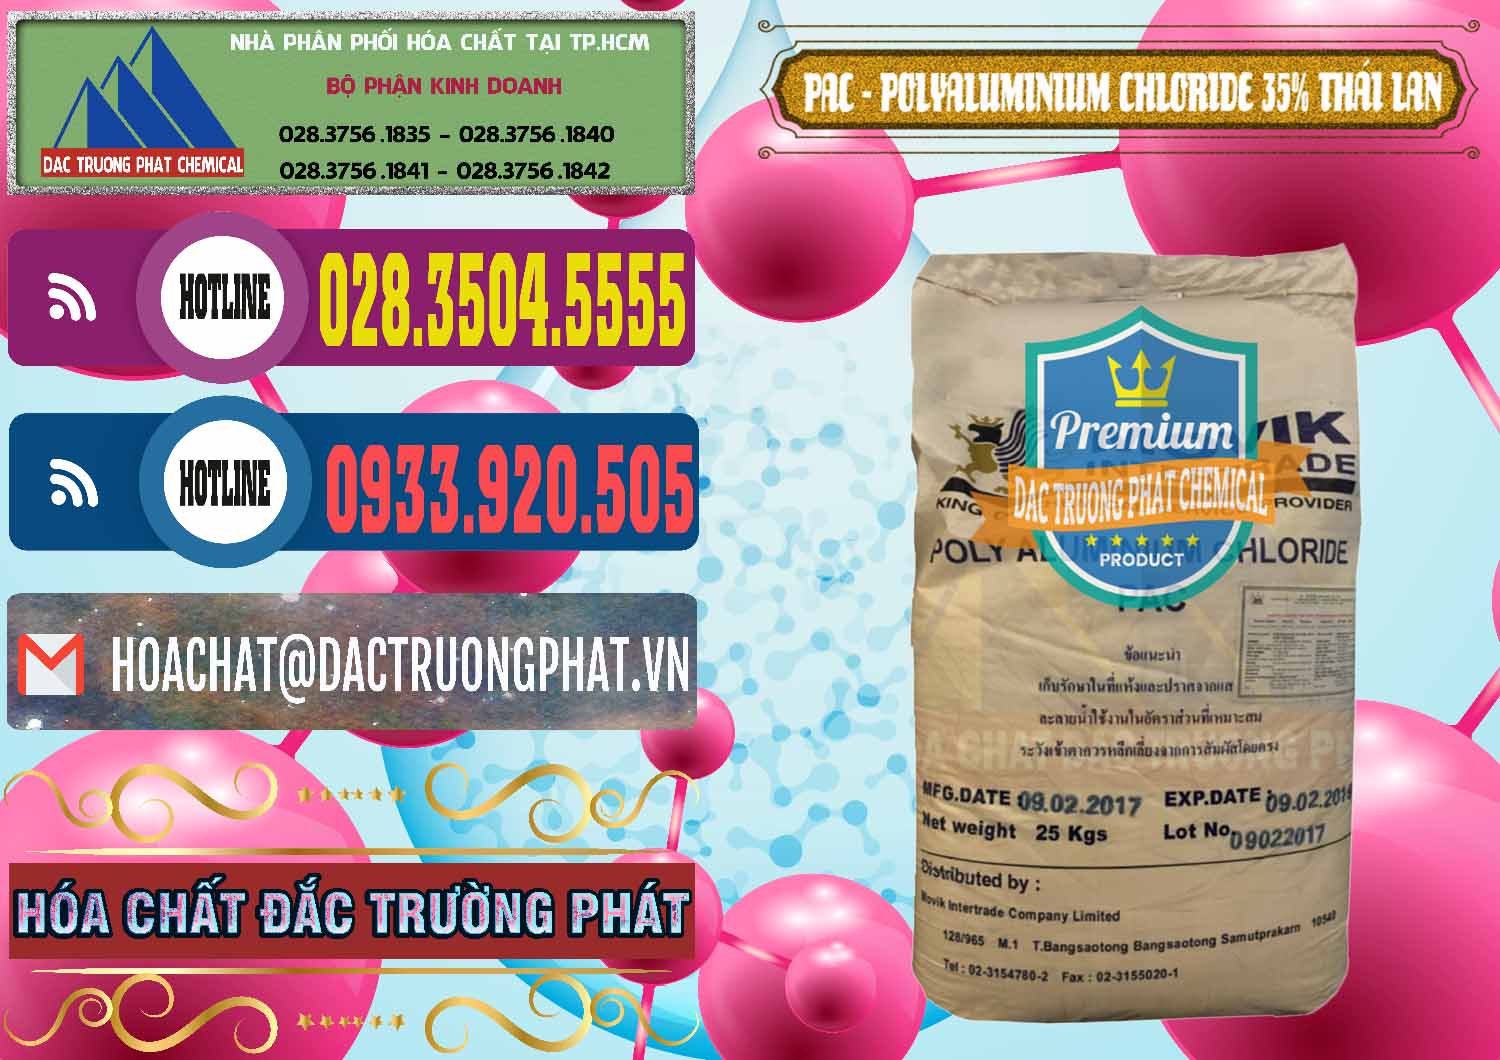 Công ty kinh doanh & bán PAC - Polyaluminium Chloride 35% Thái Lan Thailand - 0470 - Nơi chuyên nhập khẩu _ cung cấp hóa chất tại TP.HCM - muabanhoachat.com.vn